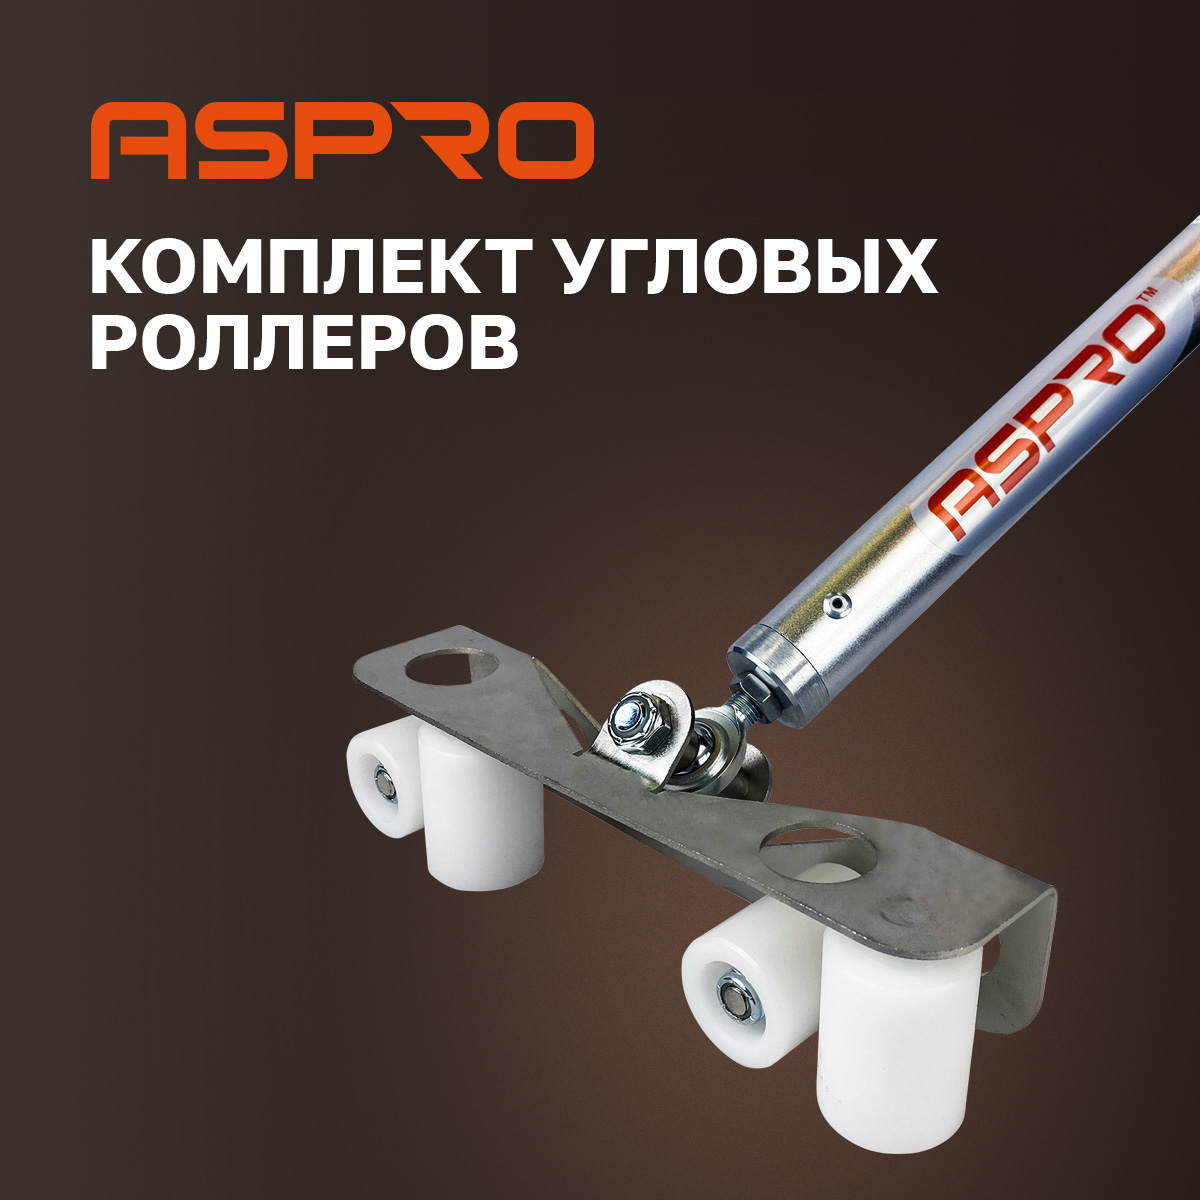 Комплект угловых роллеров Aspro, 102280 комплект угловых профилей для грядок 8мм сотка